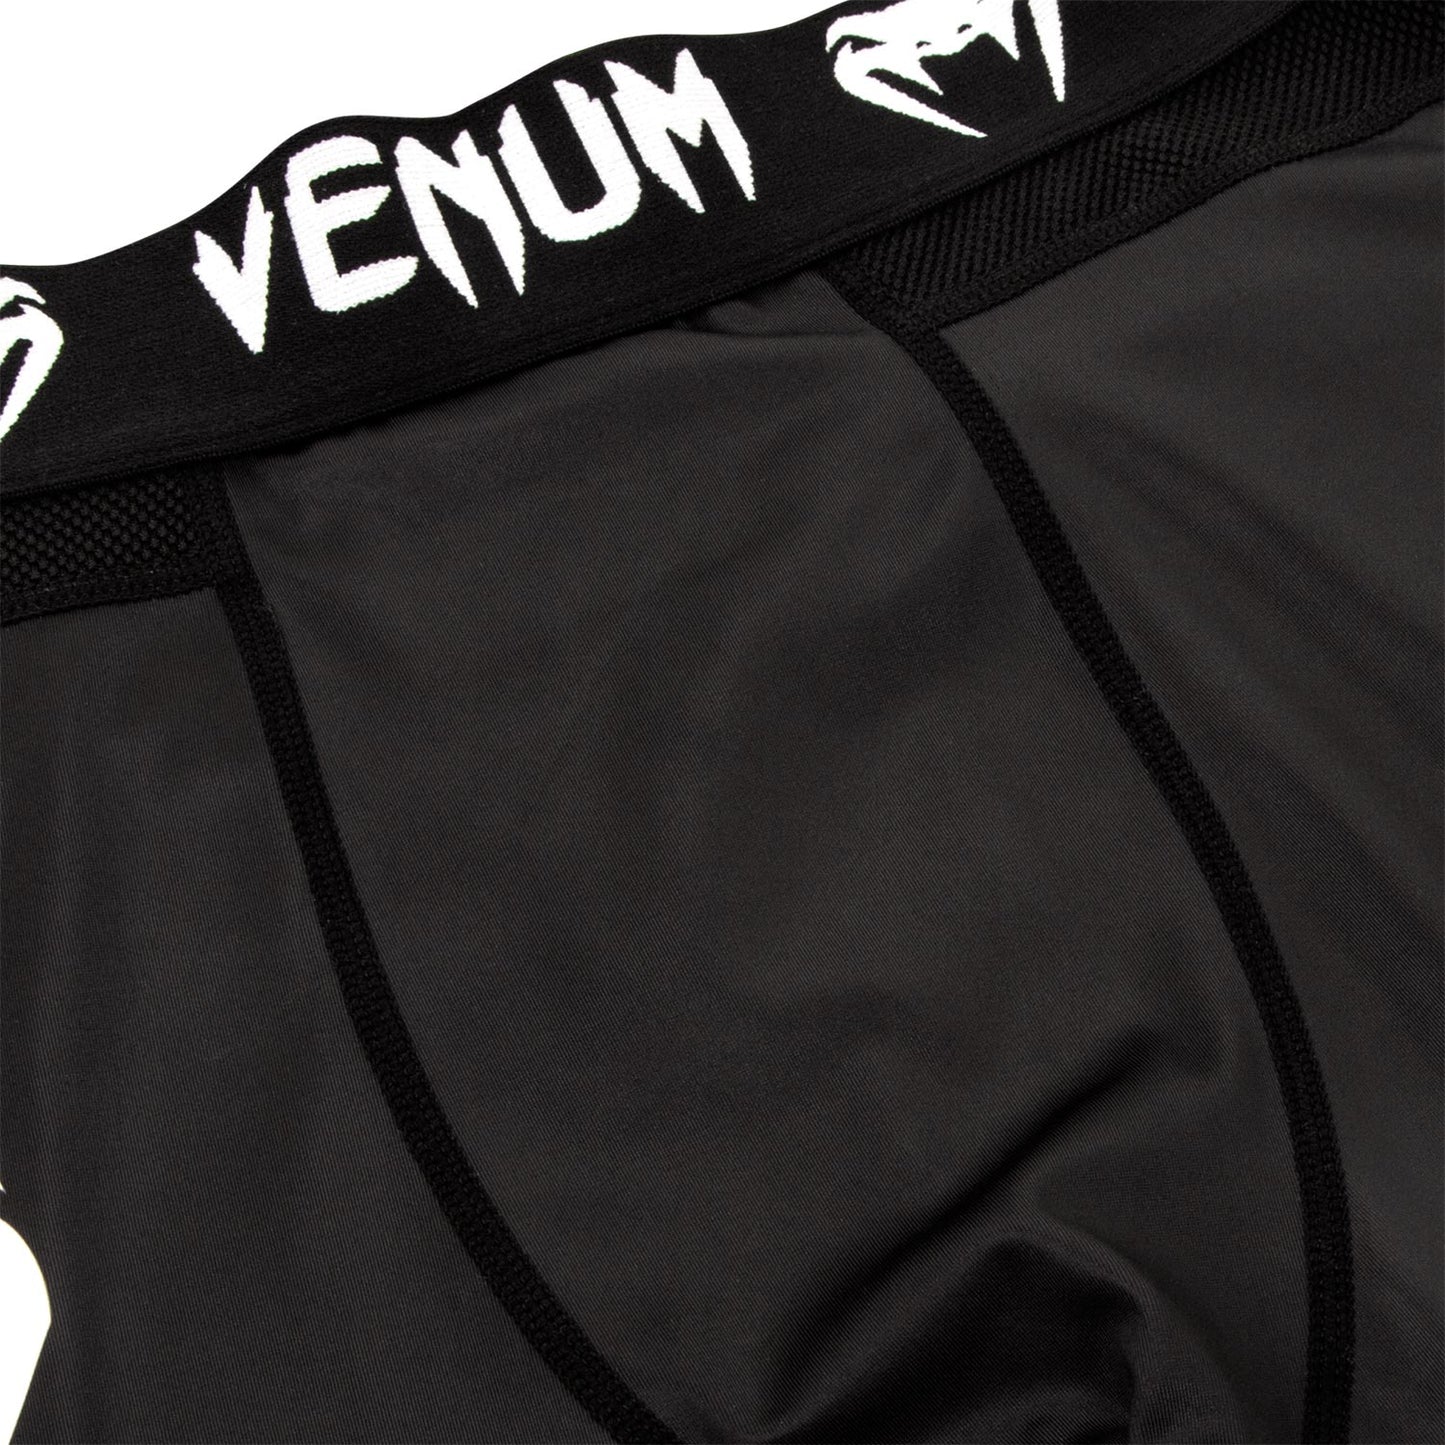 Venum Logos Compression Tights - Black/White